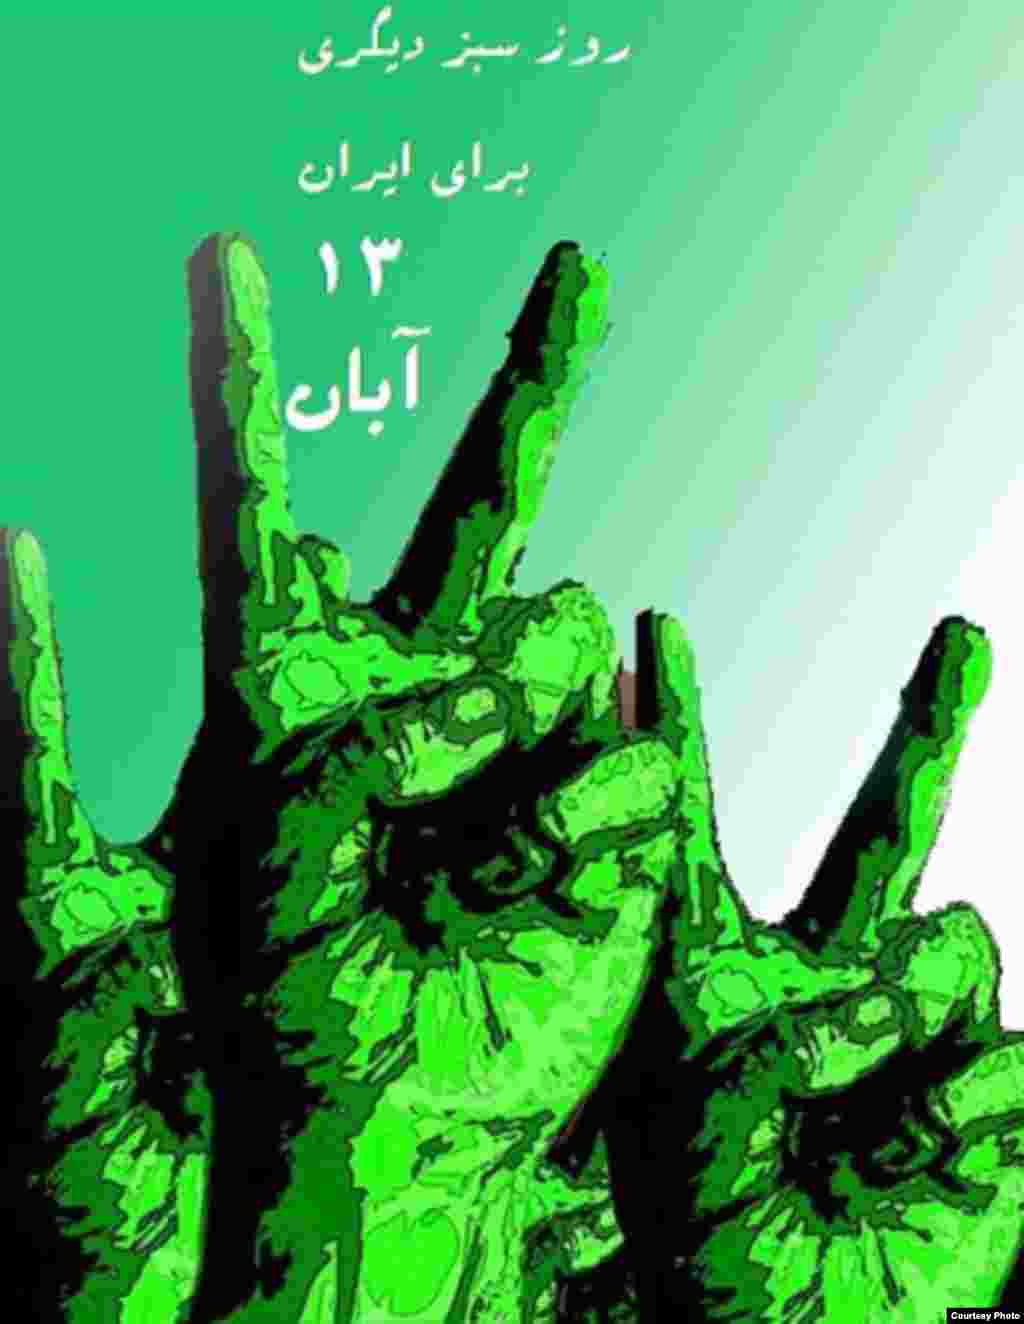 میرحسین موسوی، از رهبران جنبش سبز ایران، 13 آبان را سبزترین روز سال خواند، روزی که به گفته وی یادآور آن است که «مردم رهبران ما هستند». به دنبال این فراخوان هنرمندان هم‌صدا با جنبش سبز دست به طراحی پوسترهایی برای این «سبزترین روز سال» زدند.